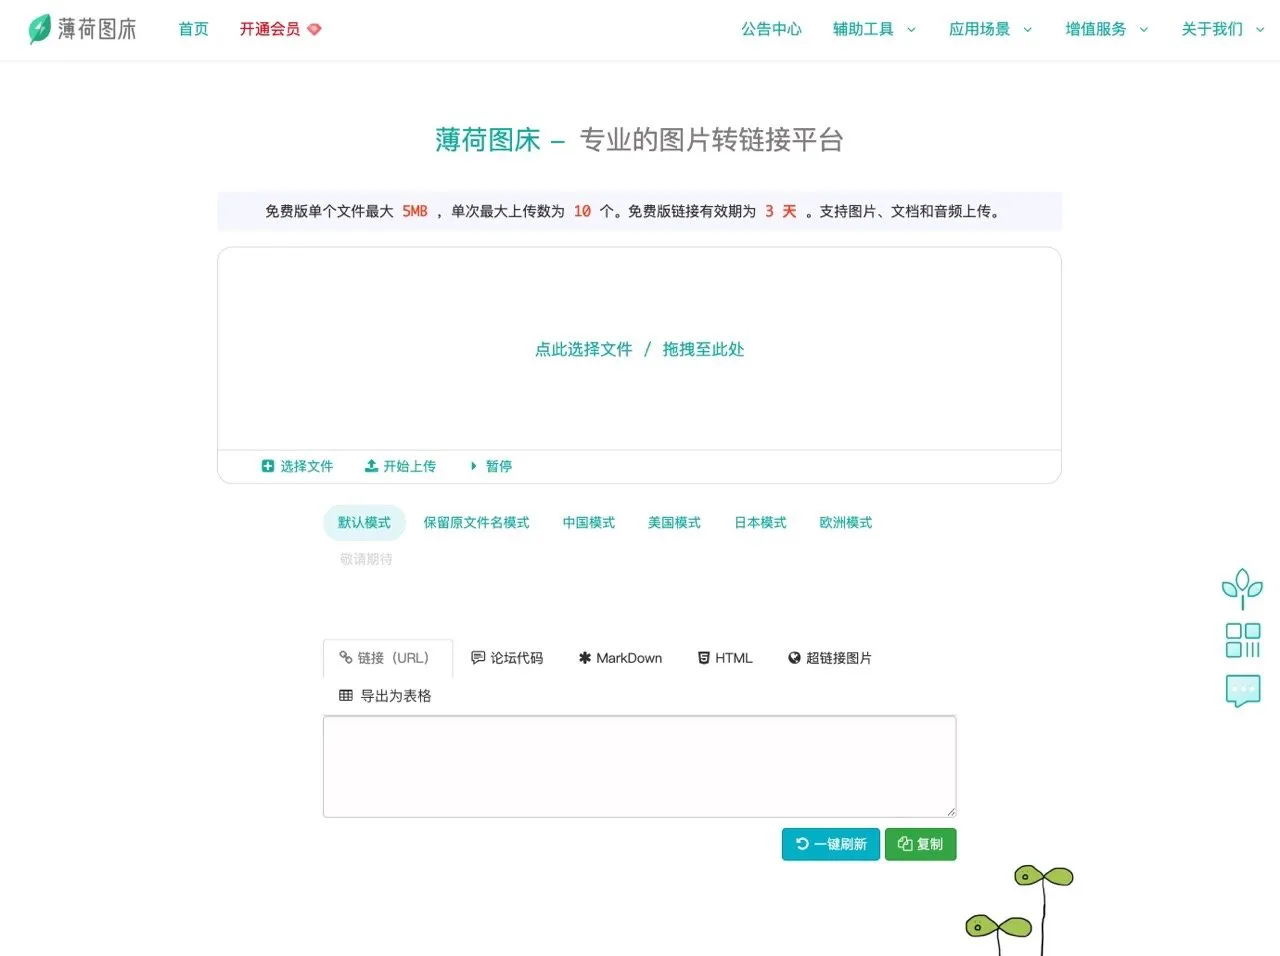 薄荷图床：免费图片转网址服务，中国模式可将图片上传香港伺服器